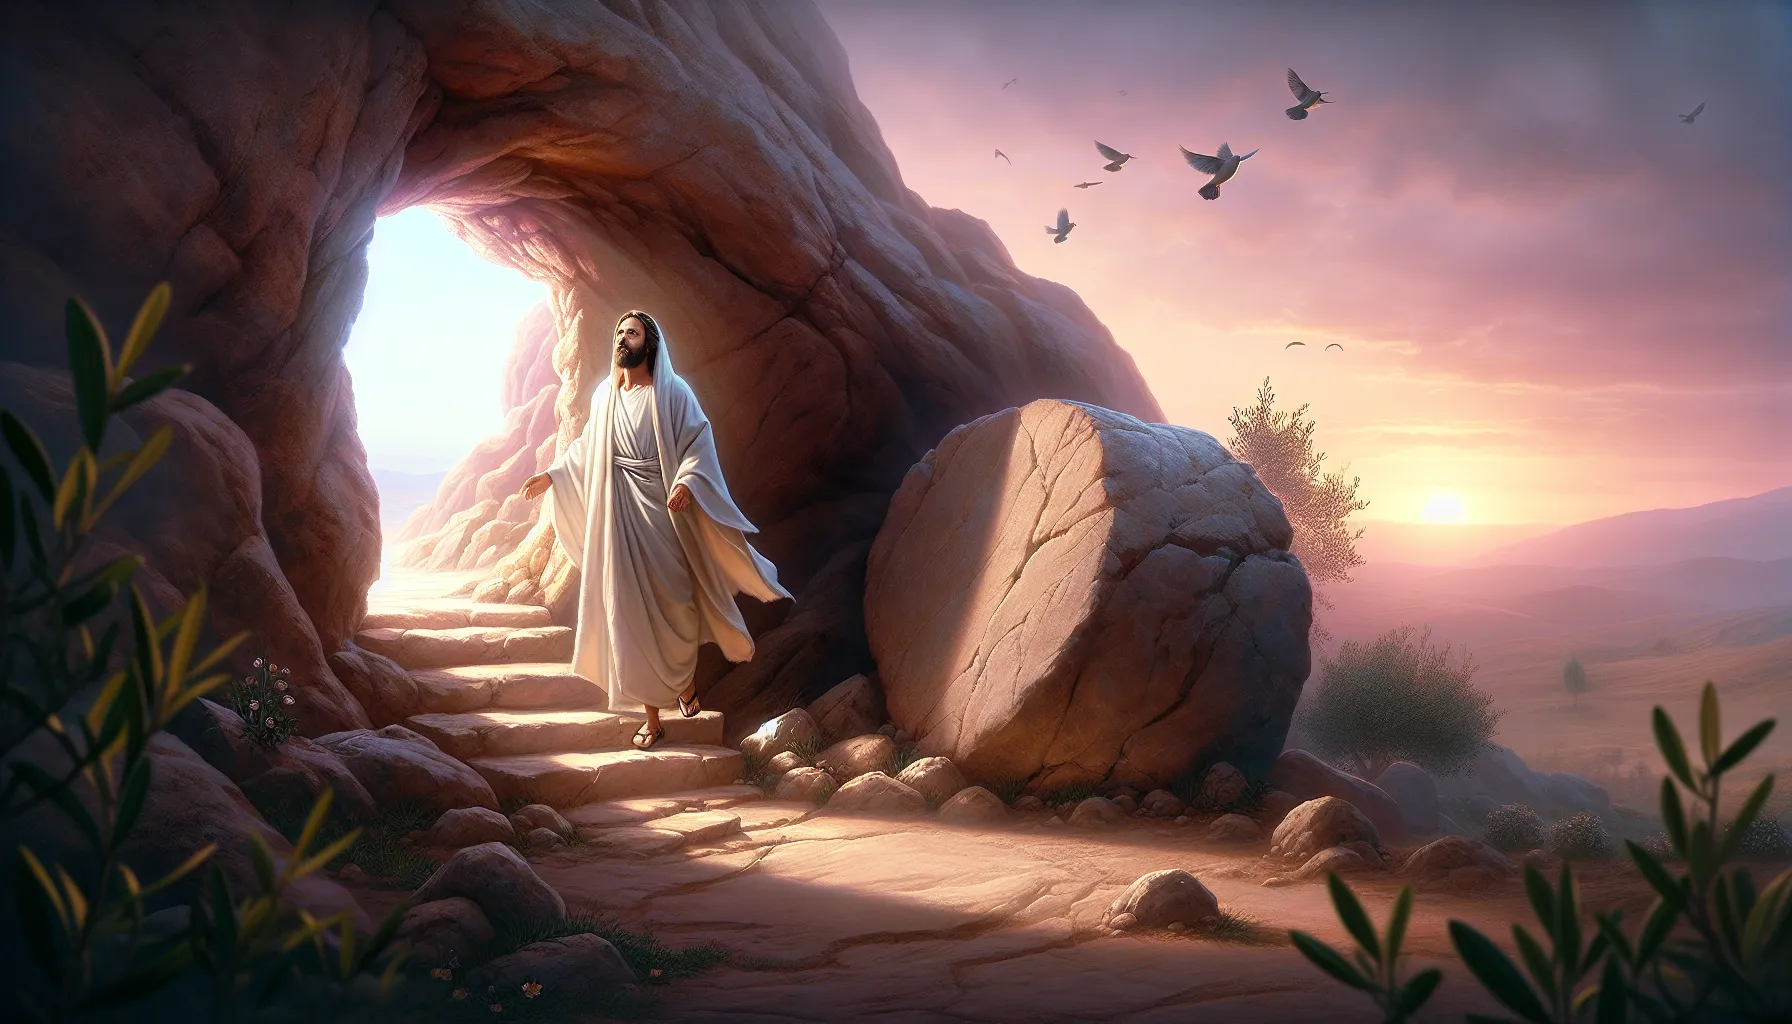 Imagen representativa de la resurrección de Jesús